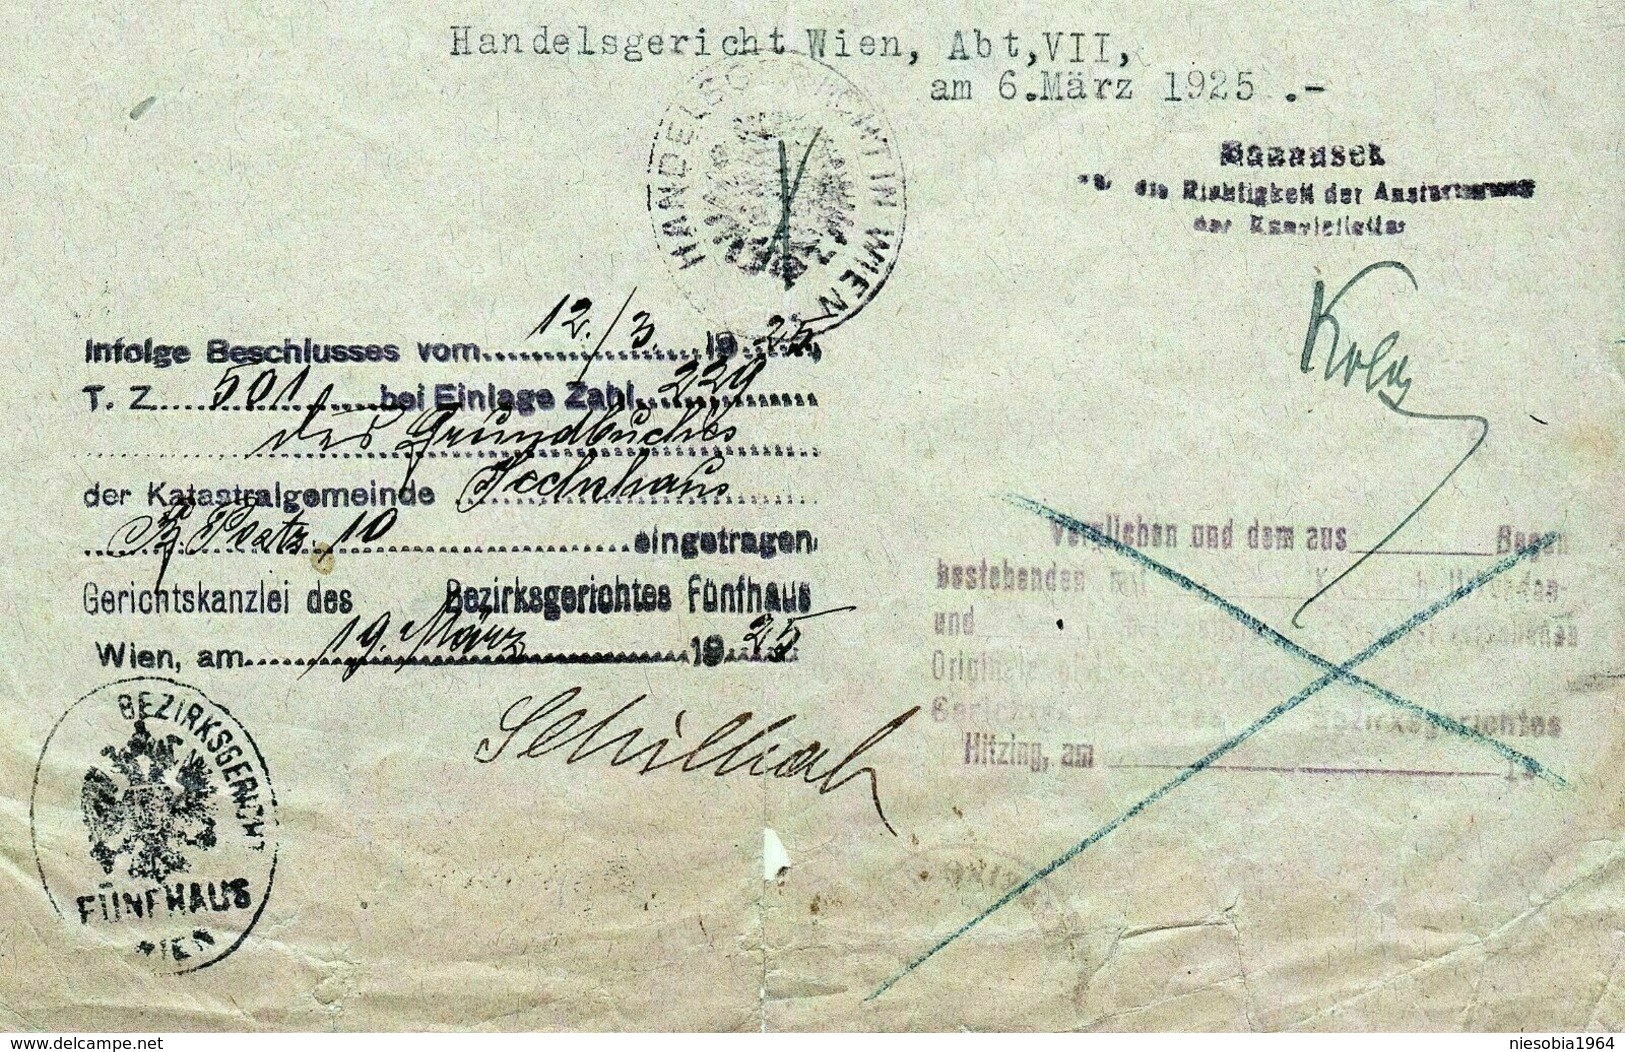 3 x Austrian duty stamp Oesterreichische Gebührenmarke Hietzing Vienna 1925